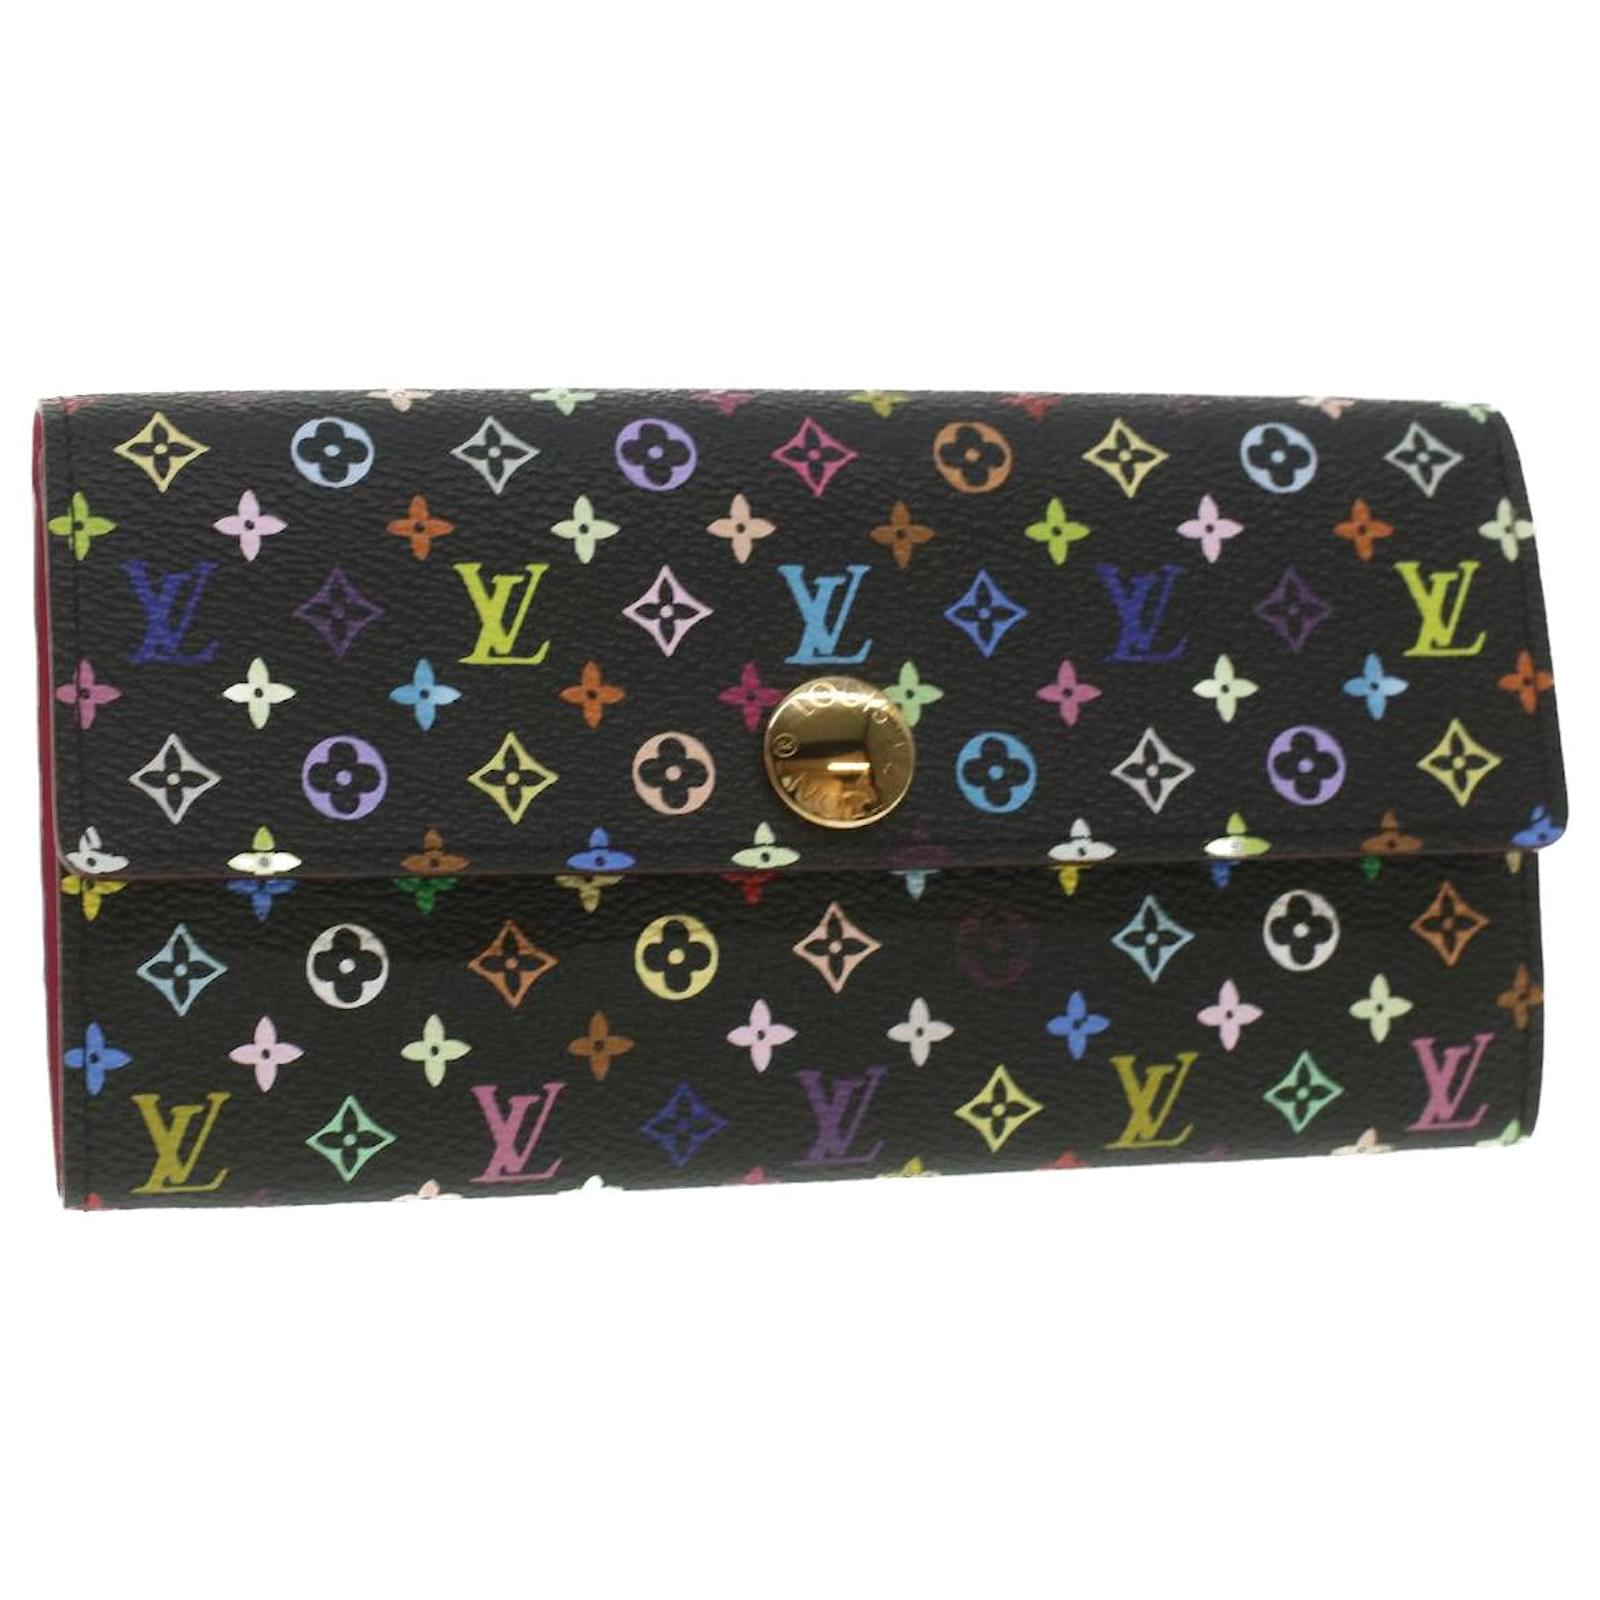 Shop Louis Vuitton PORTEFEUILLE SARAH Sarah wallet (M61182) by